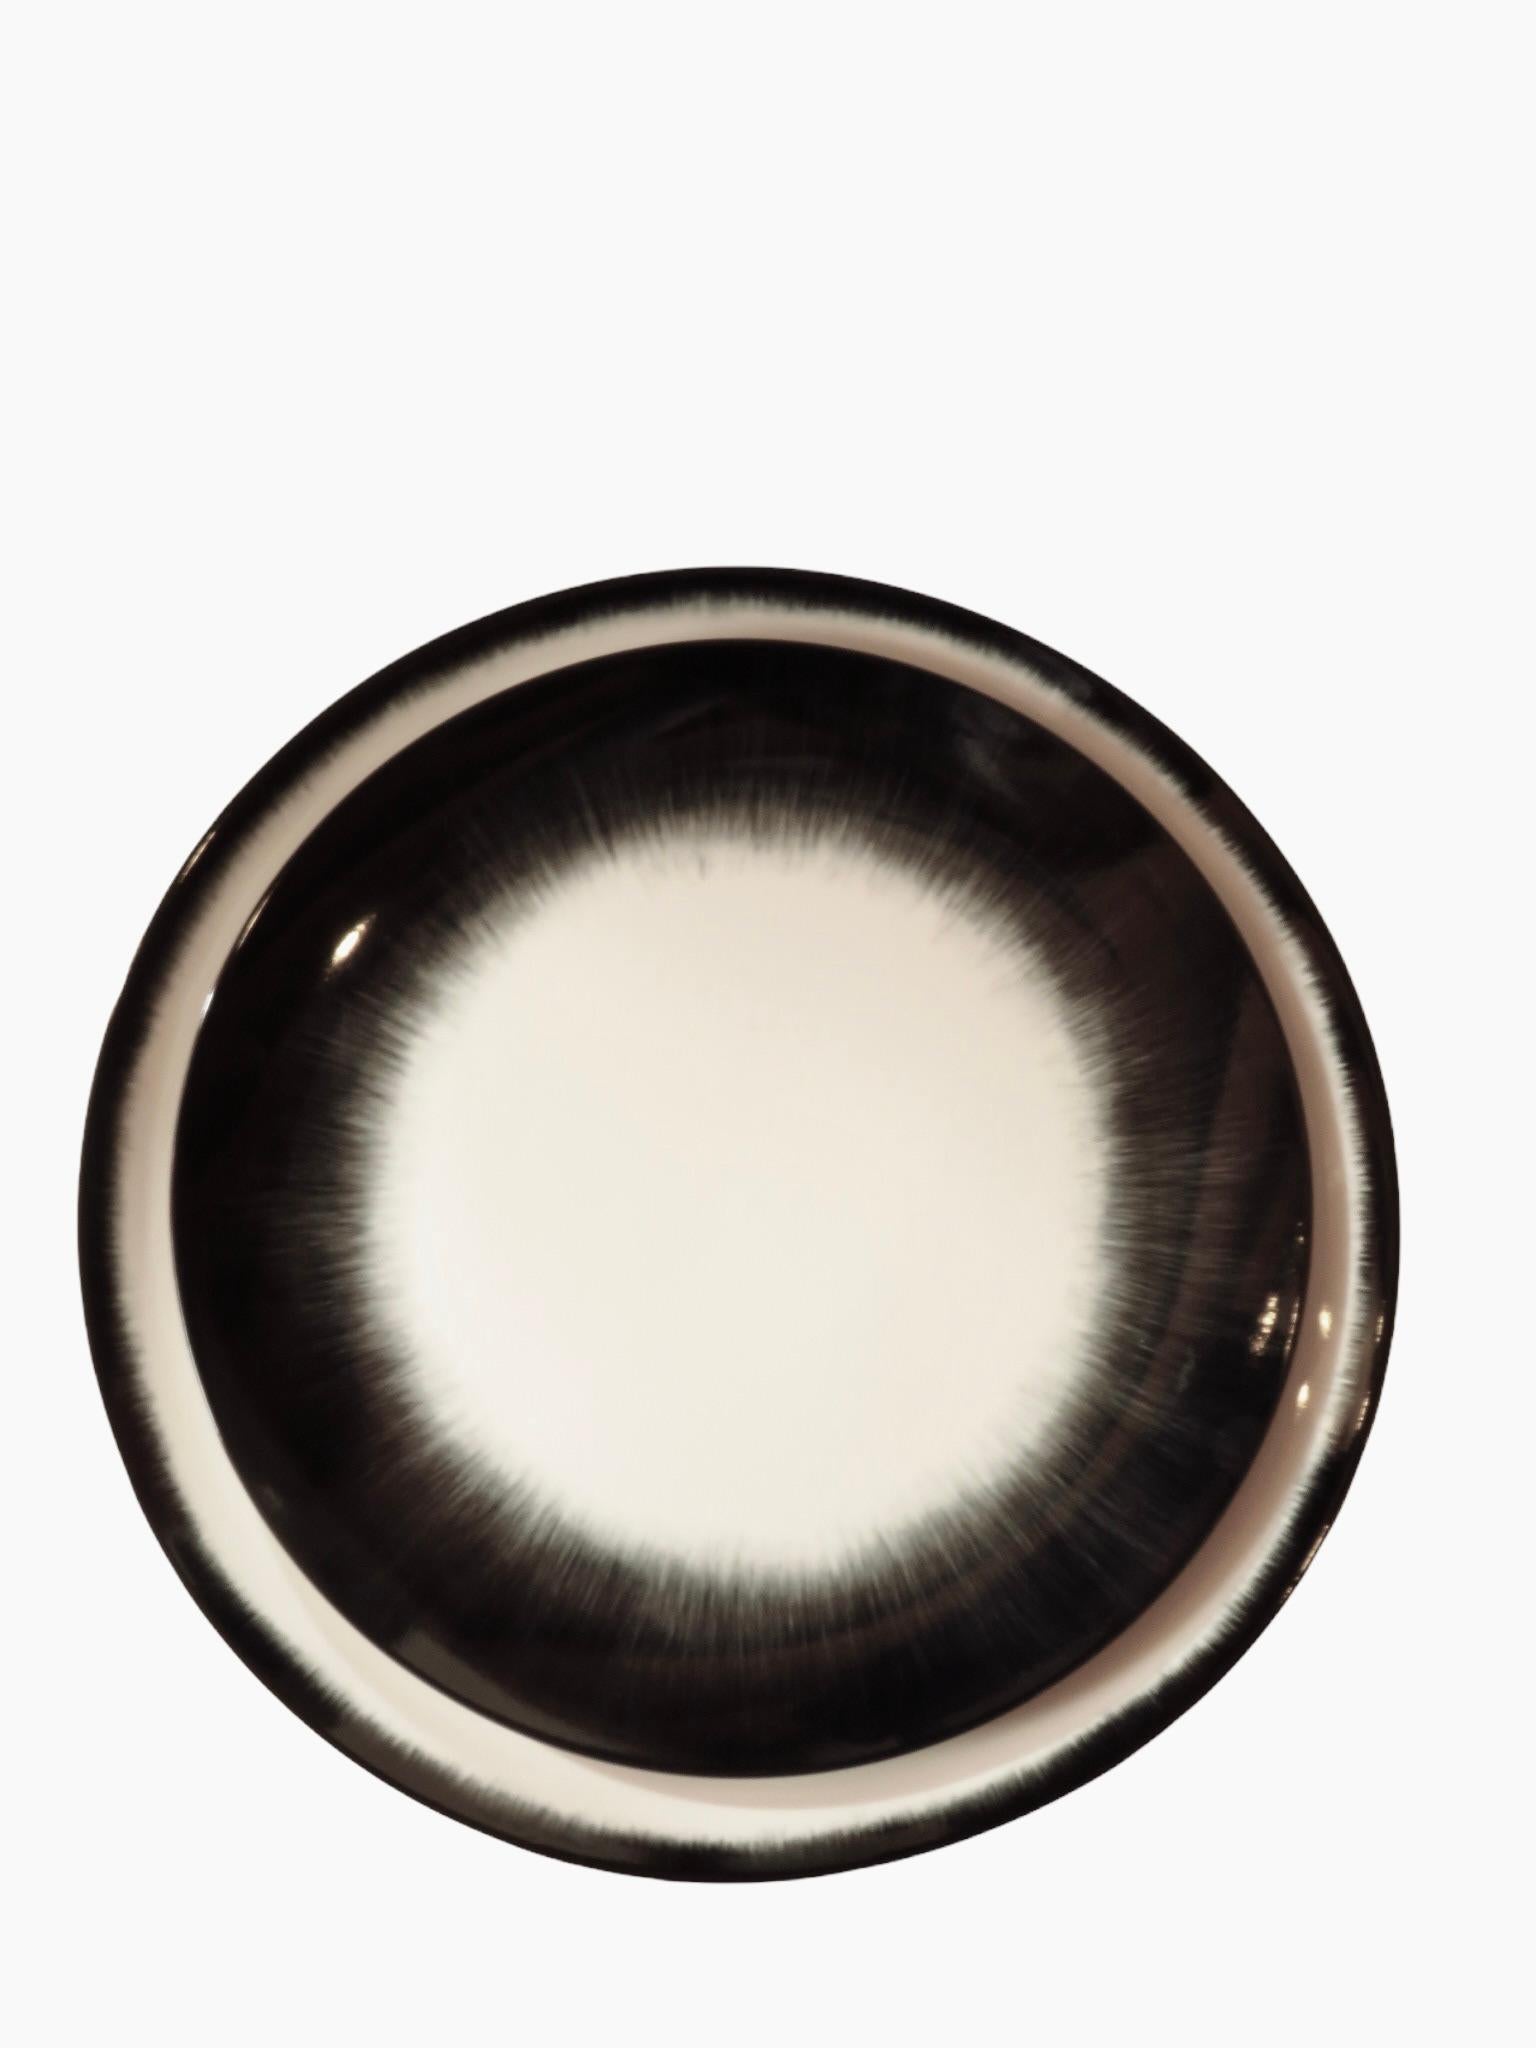 Ann Ann Demeulemeester für Serax 17,5 cm Teller (Set von zwei) (Weiß) im Angebot